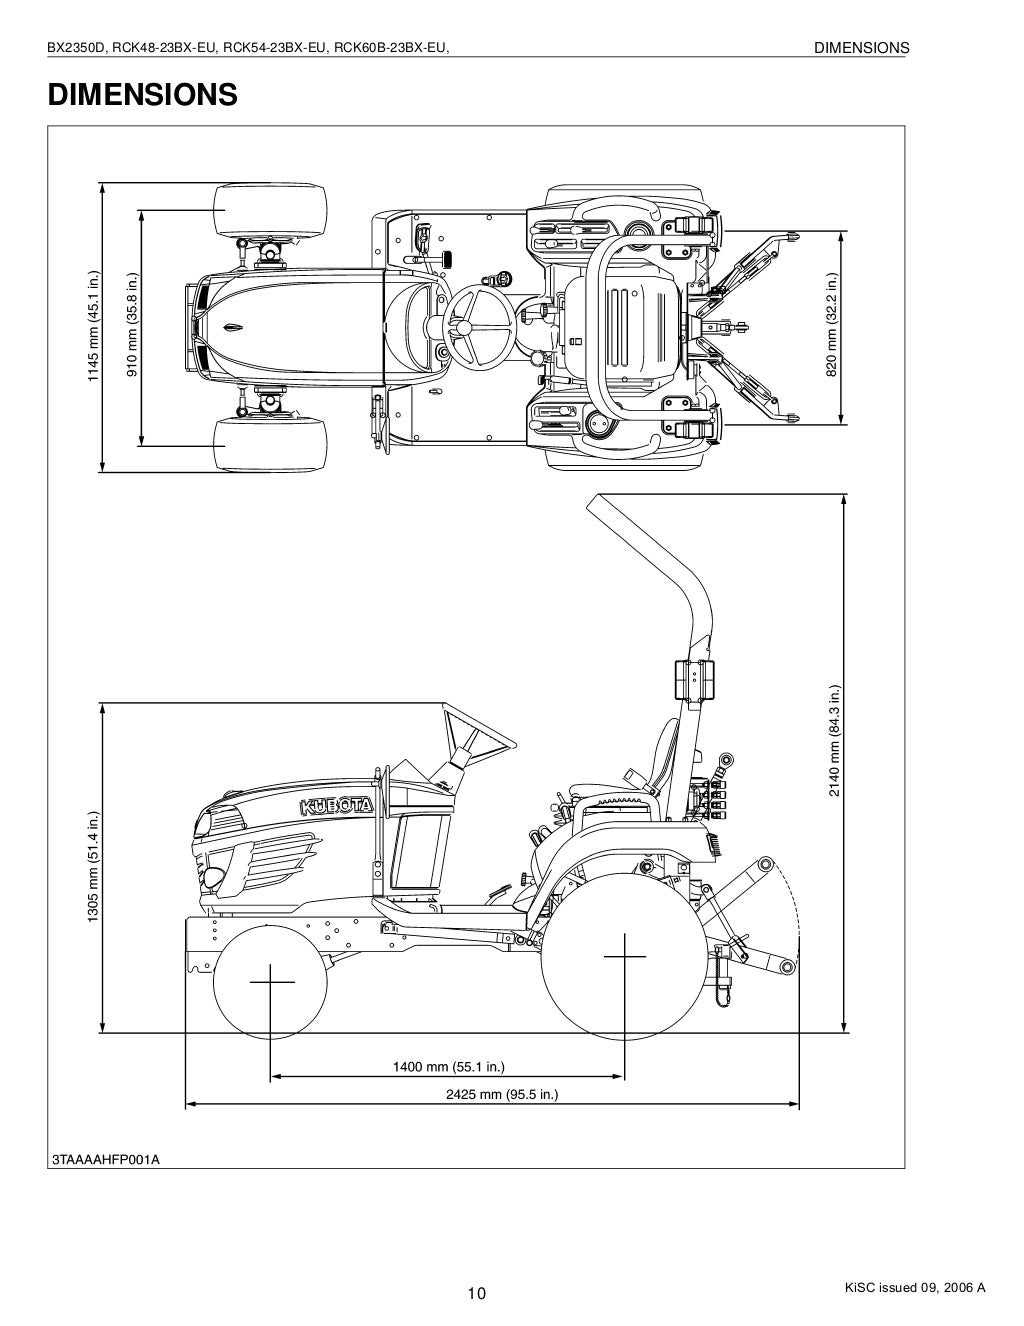 Kubota RCK54-23BX-EU Tractor Service Repair Manual